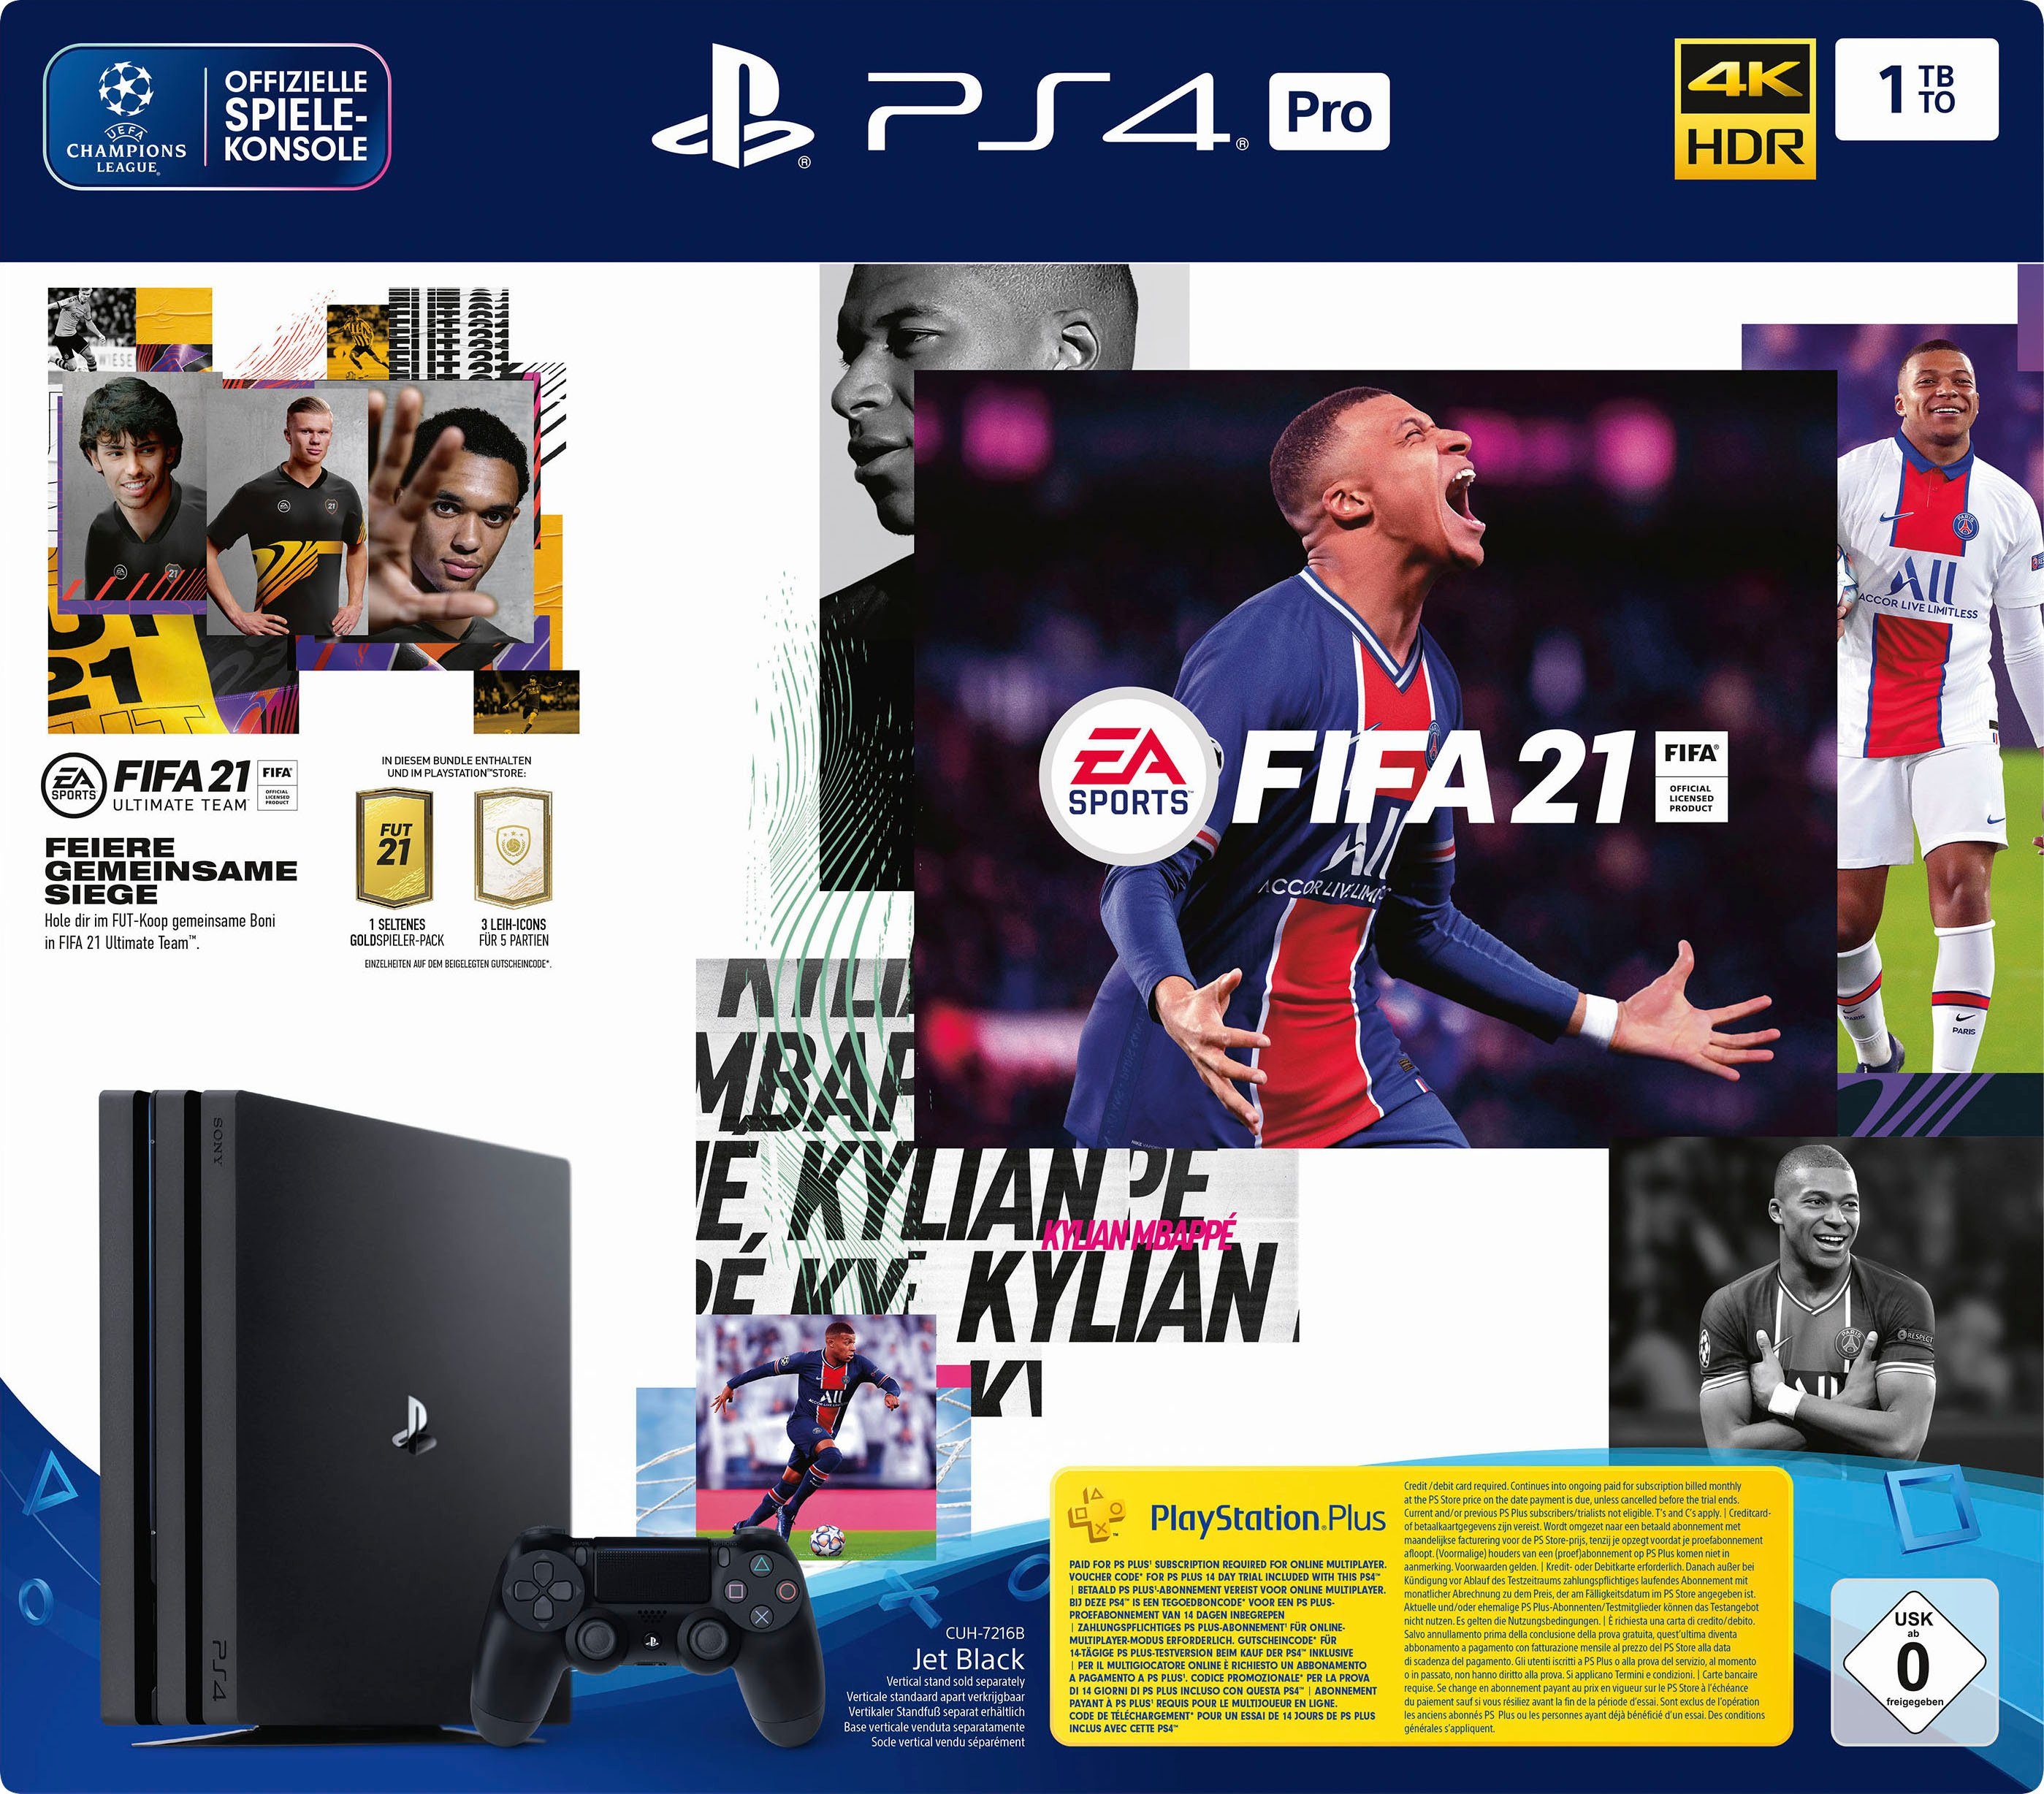 PlayStation 4 Pro 1TB, inkl. FIFA 21, Nie dagewesene visuelle Präzision  dank Auflösung in 4K-Qualität online kaufen | OTTO